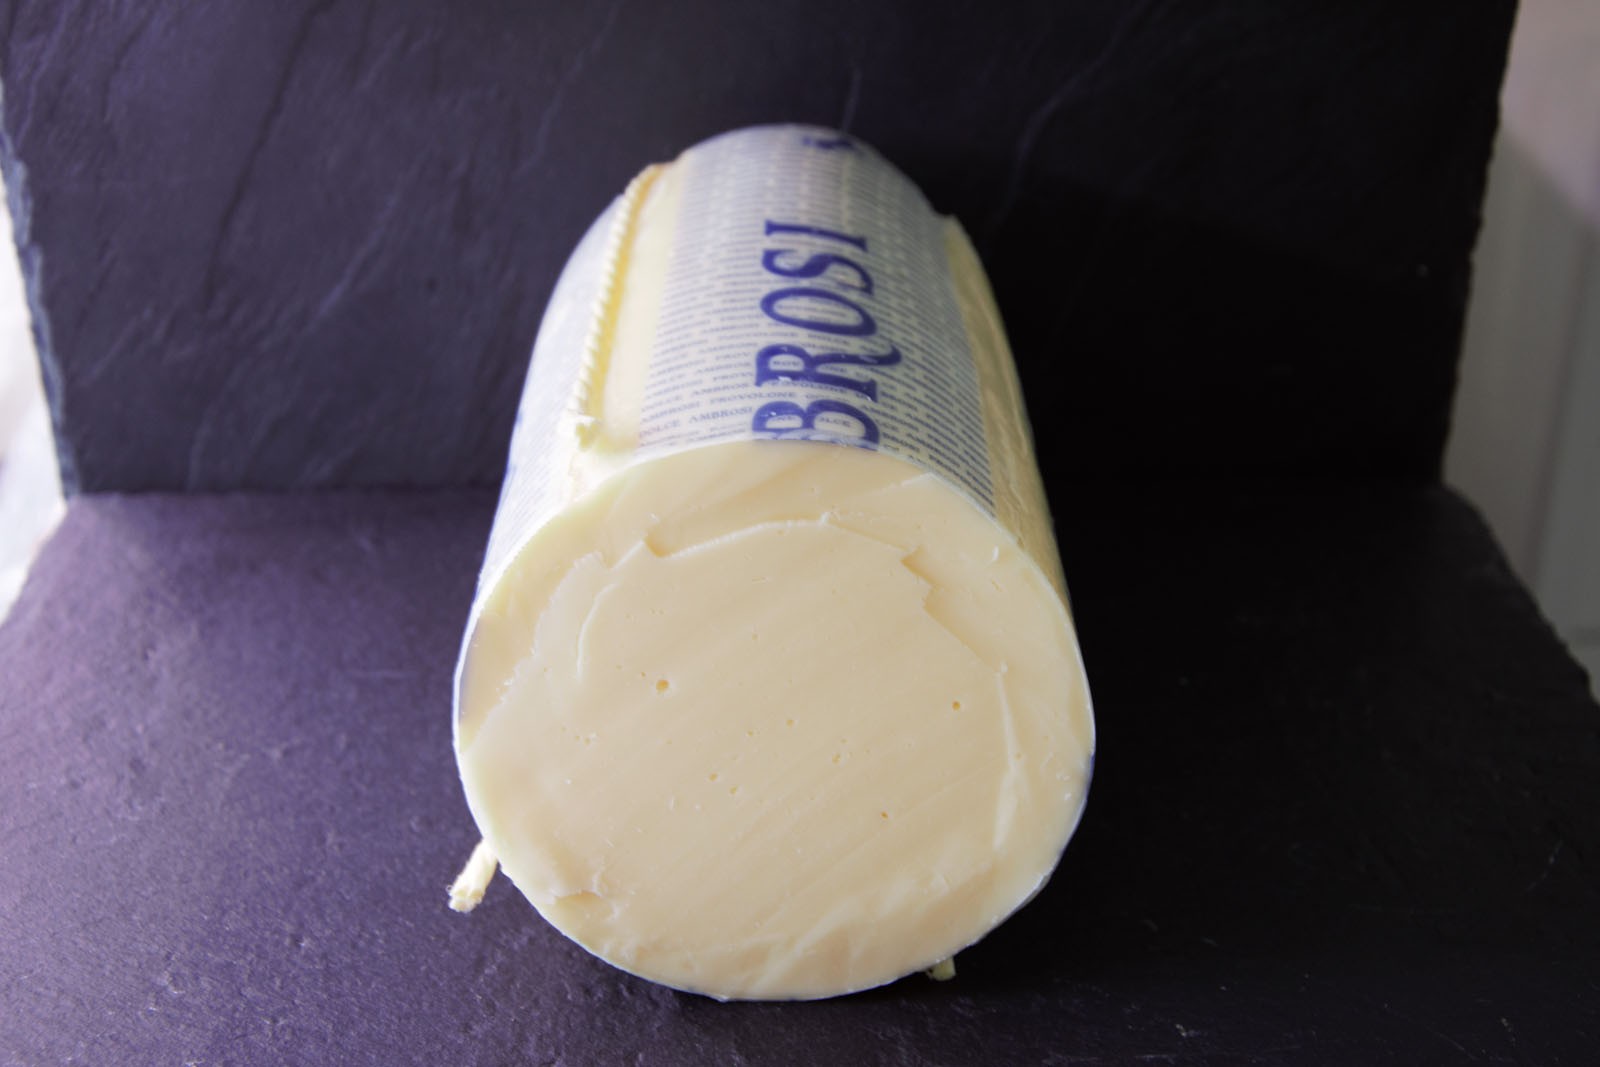 Le Provolone, le fromage italien par excellence - Paroles de Fromagers